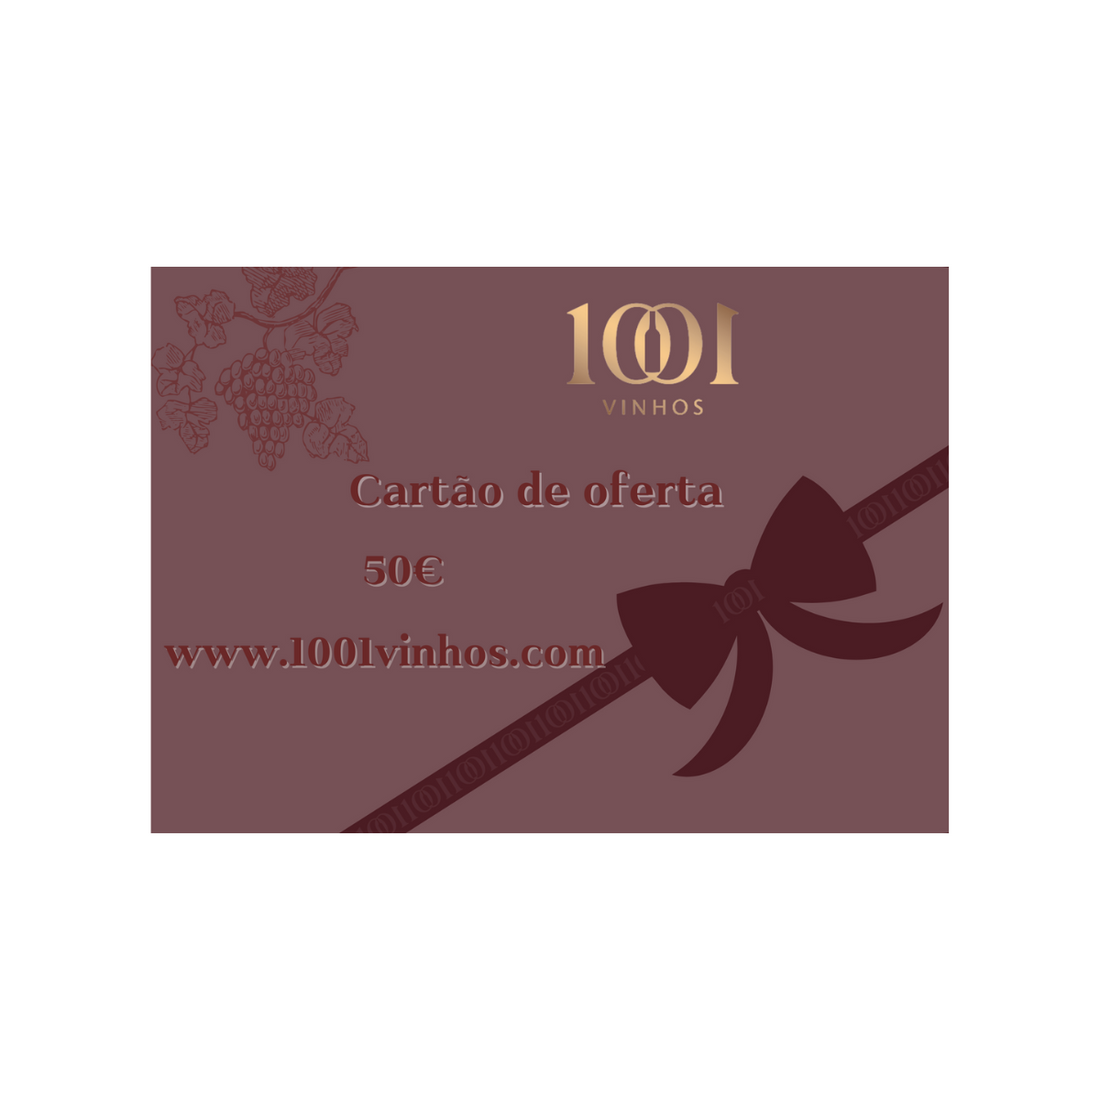 Tarjeta de oferta de 1001 vinos